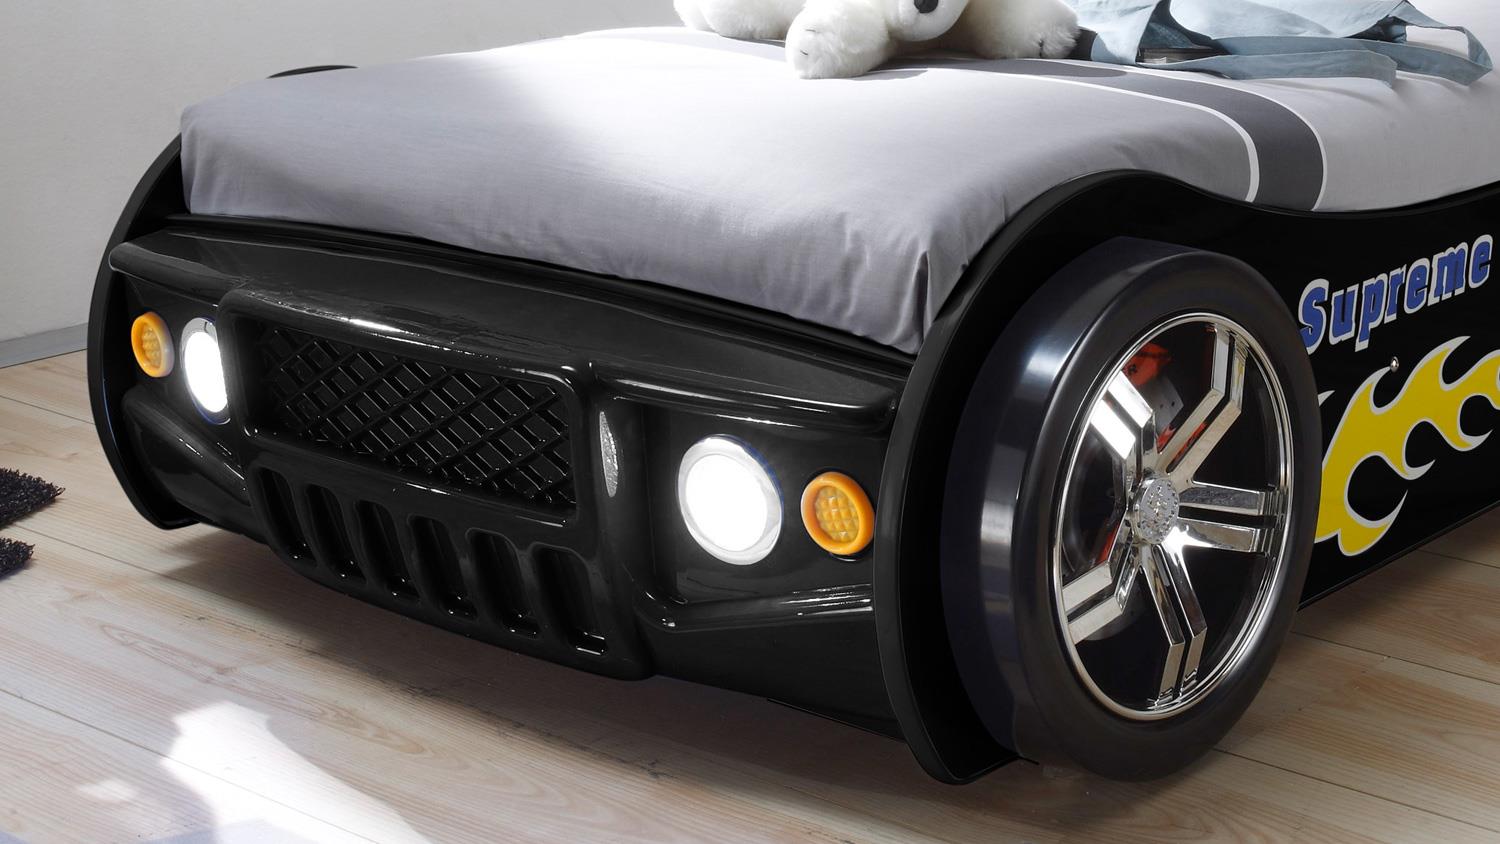 Autobett ENERGY MDF Kinderbett Bett schwarz lackiert inkl. Beleuchtung